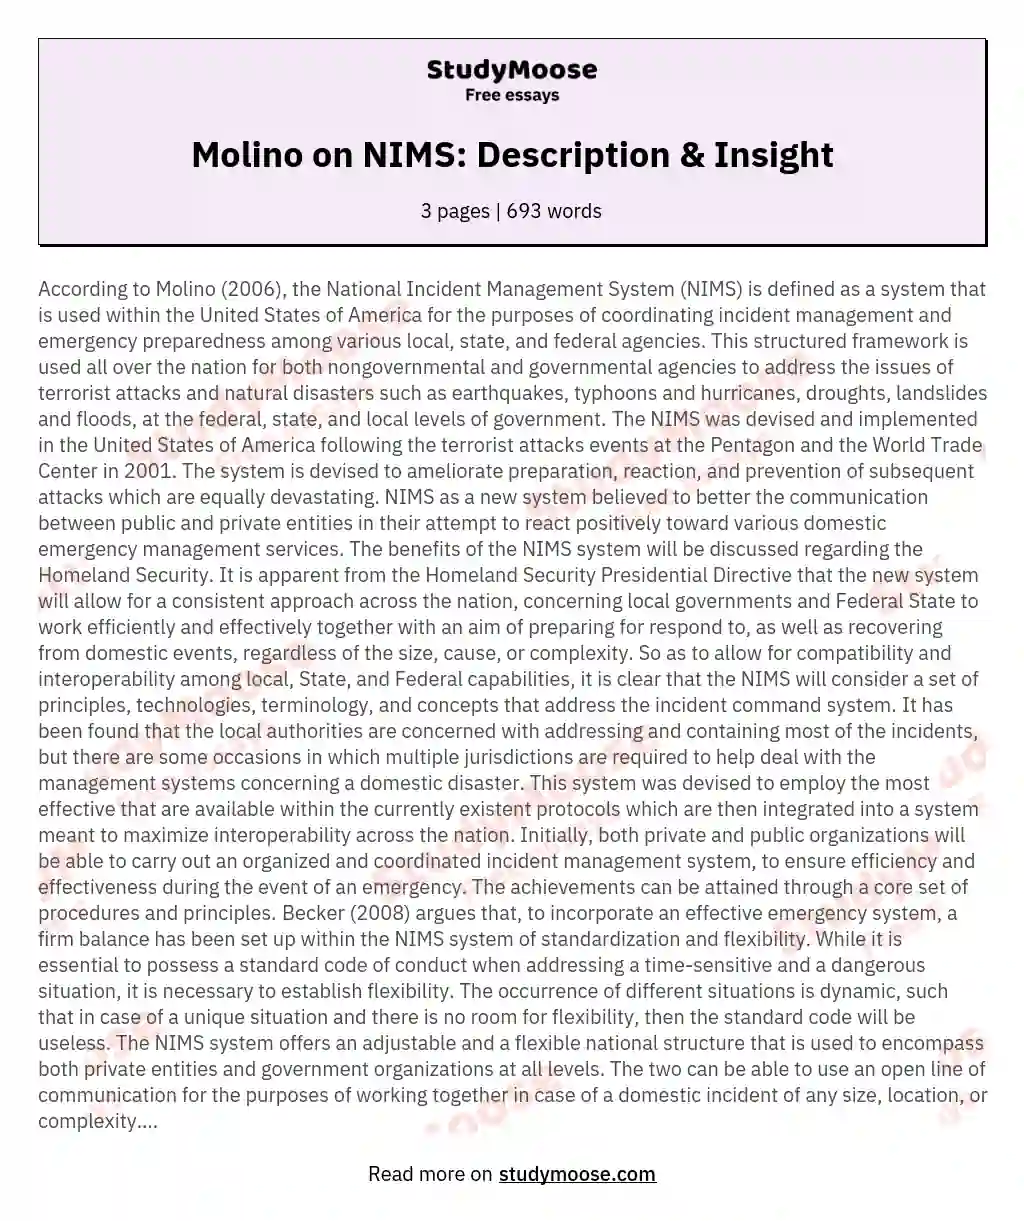 Molino on NIMS: Description & Insight essay